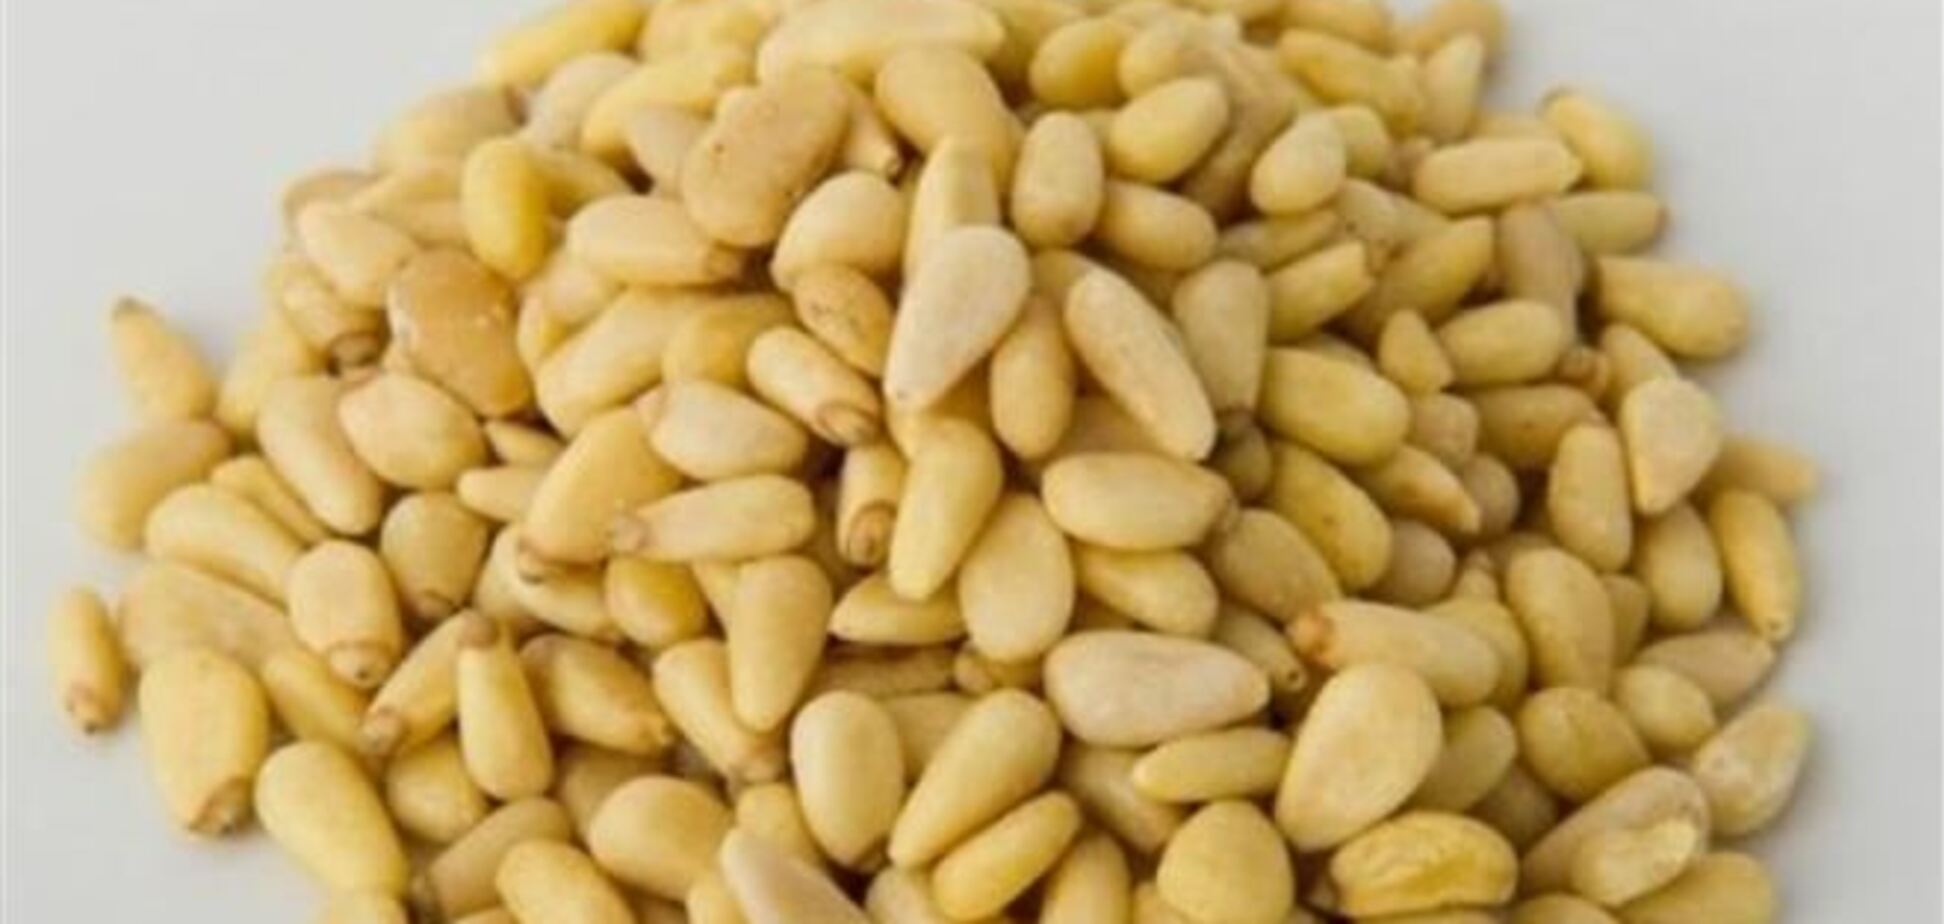 60 гр орехов спасают от самого агрессивного рака